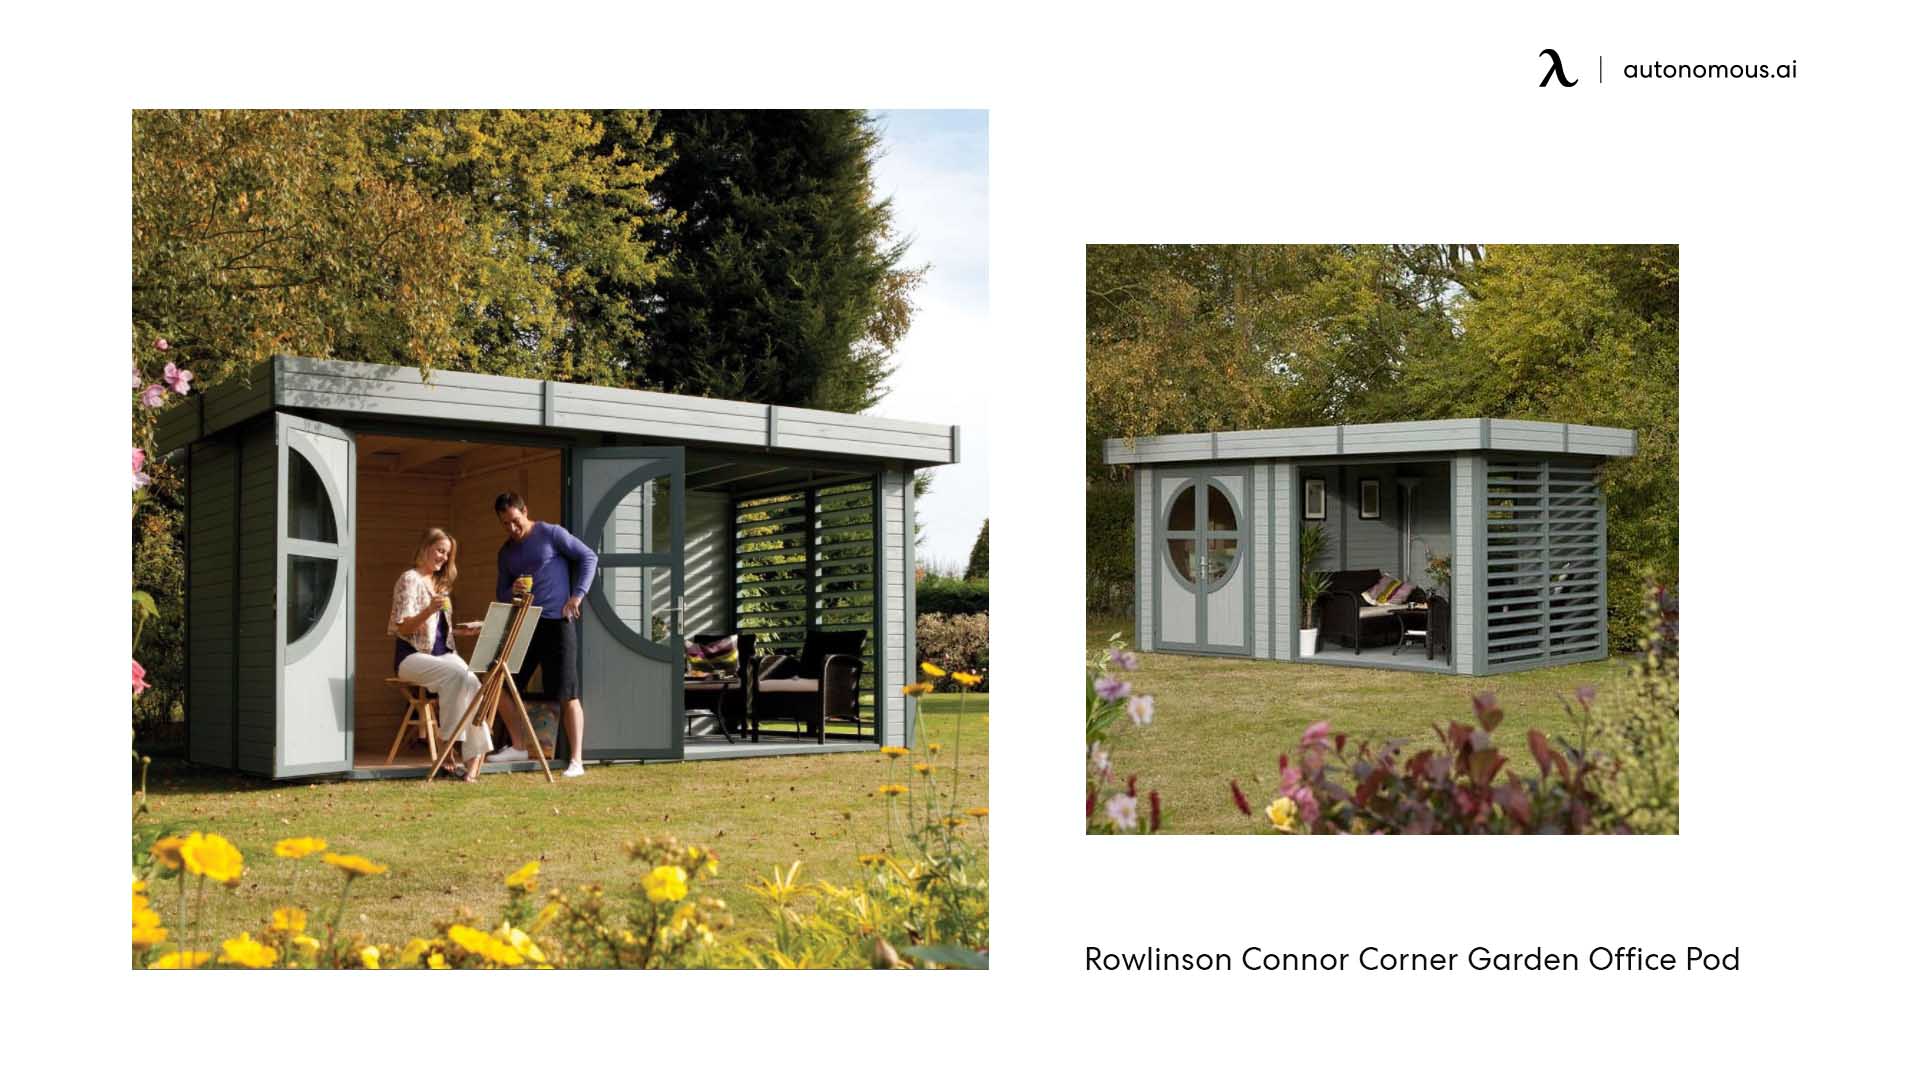 Rowlinson Connor garden office pod